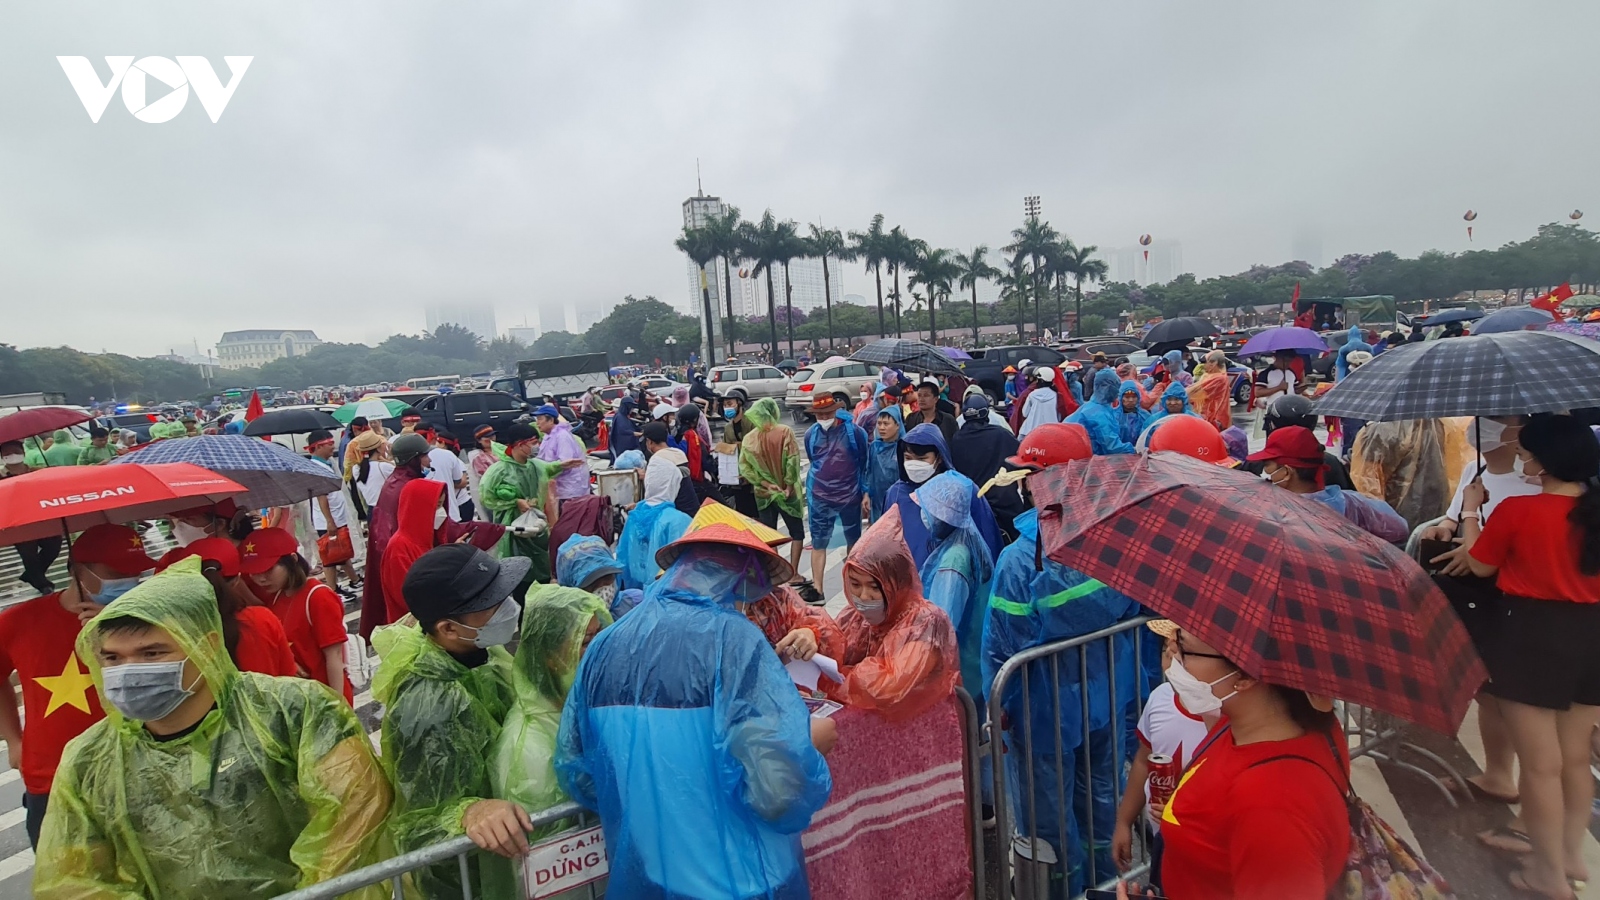 CĐV "đội mưa" đến theo dõi trận U23 Việt Nam - U23 Thái Lan sớm 3 tiếng